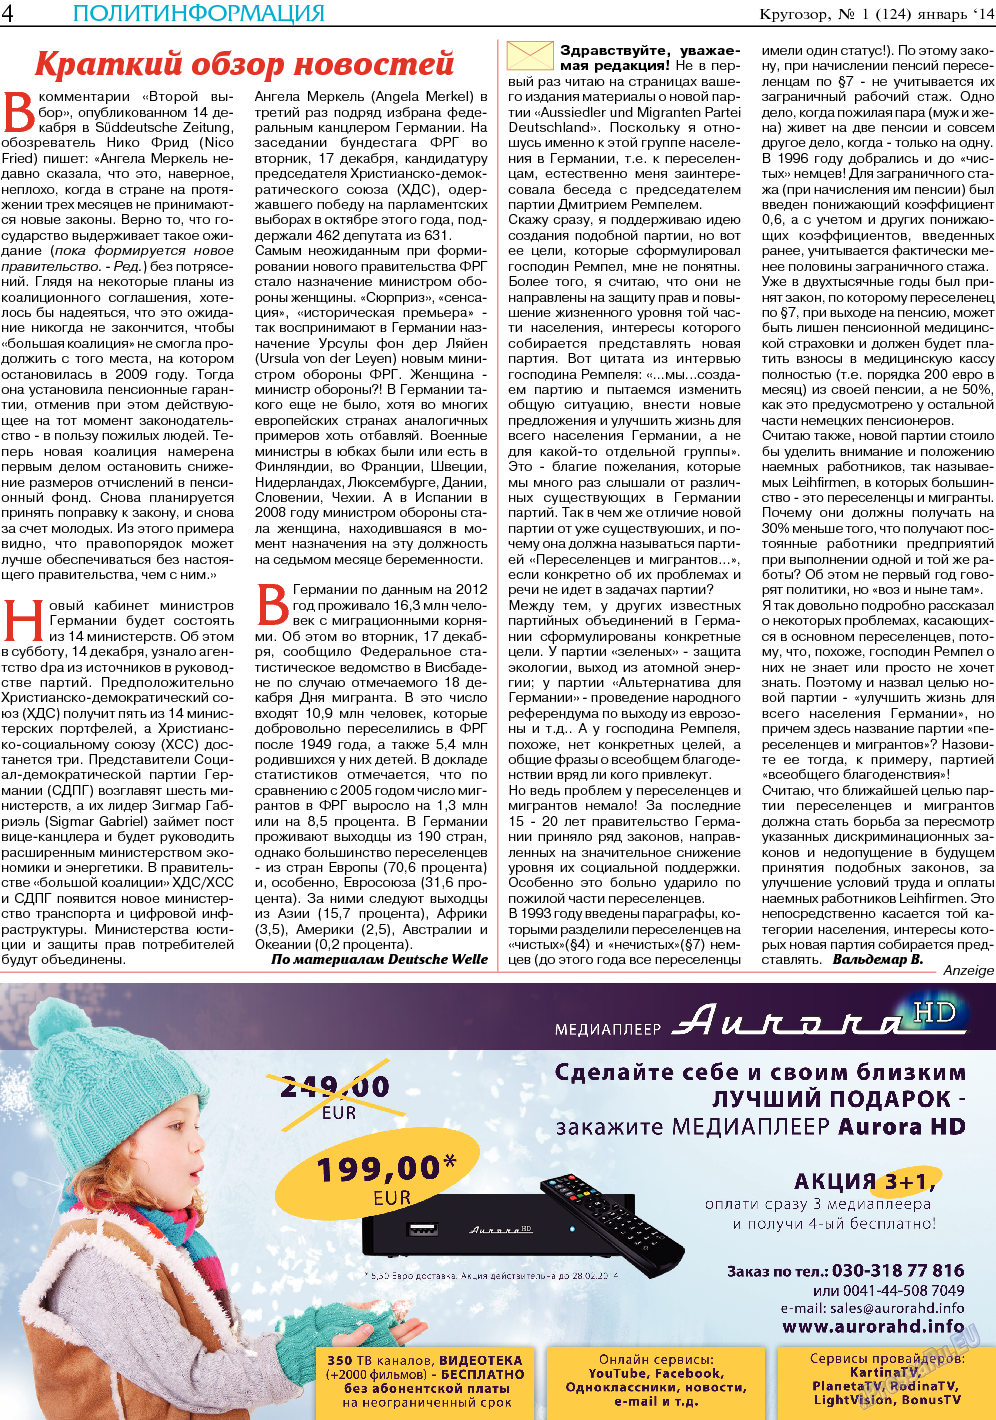 Кругозор (газета). 2014 год, номер 1, стр. 4